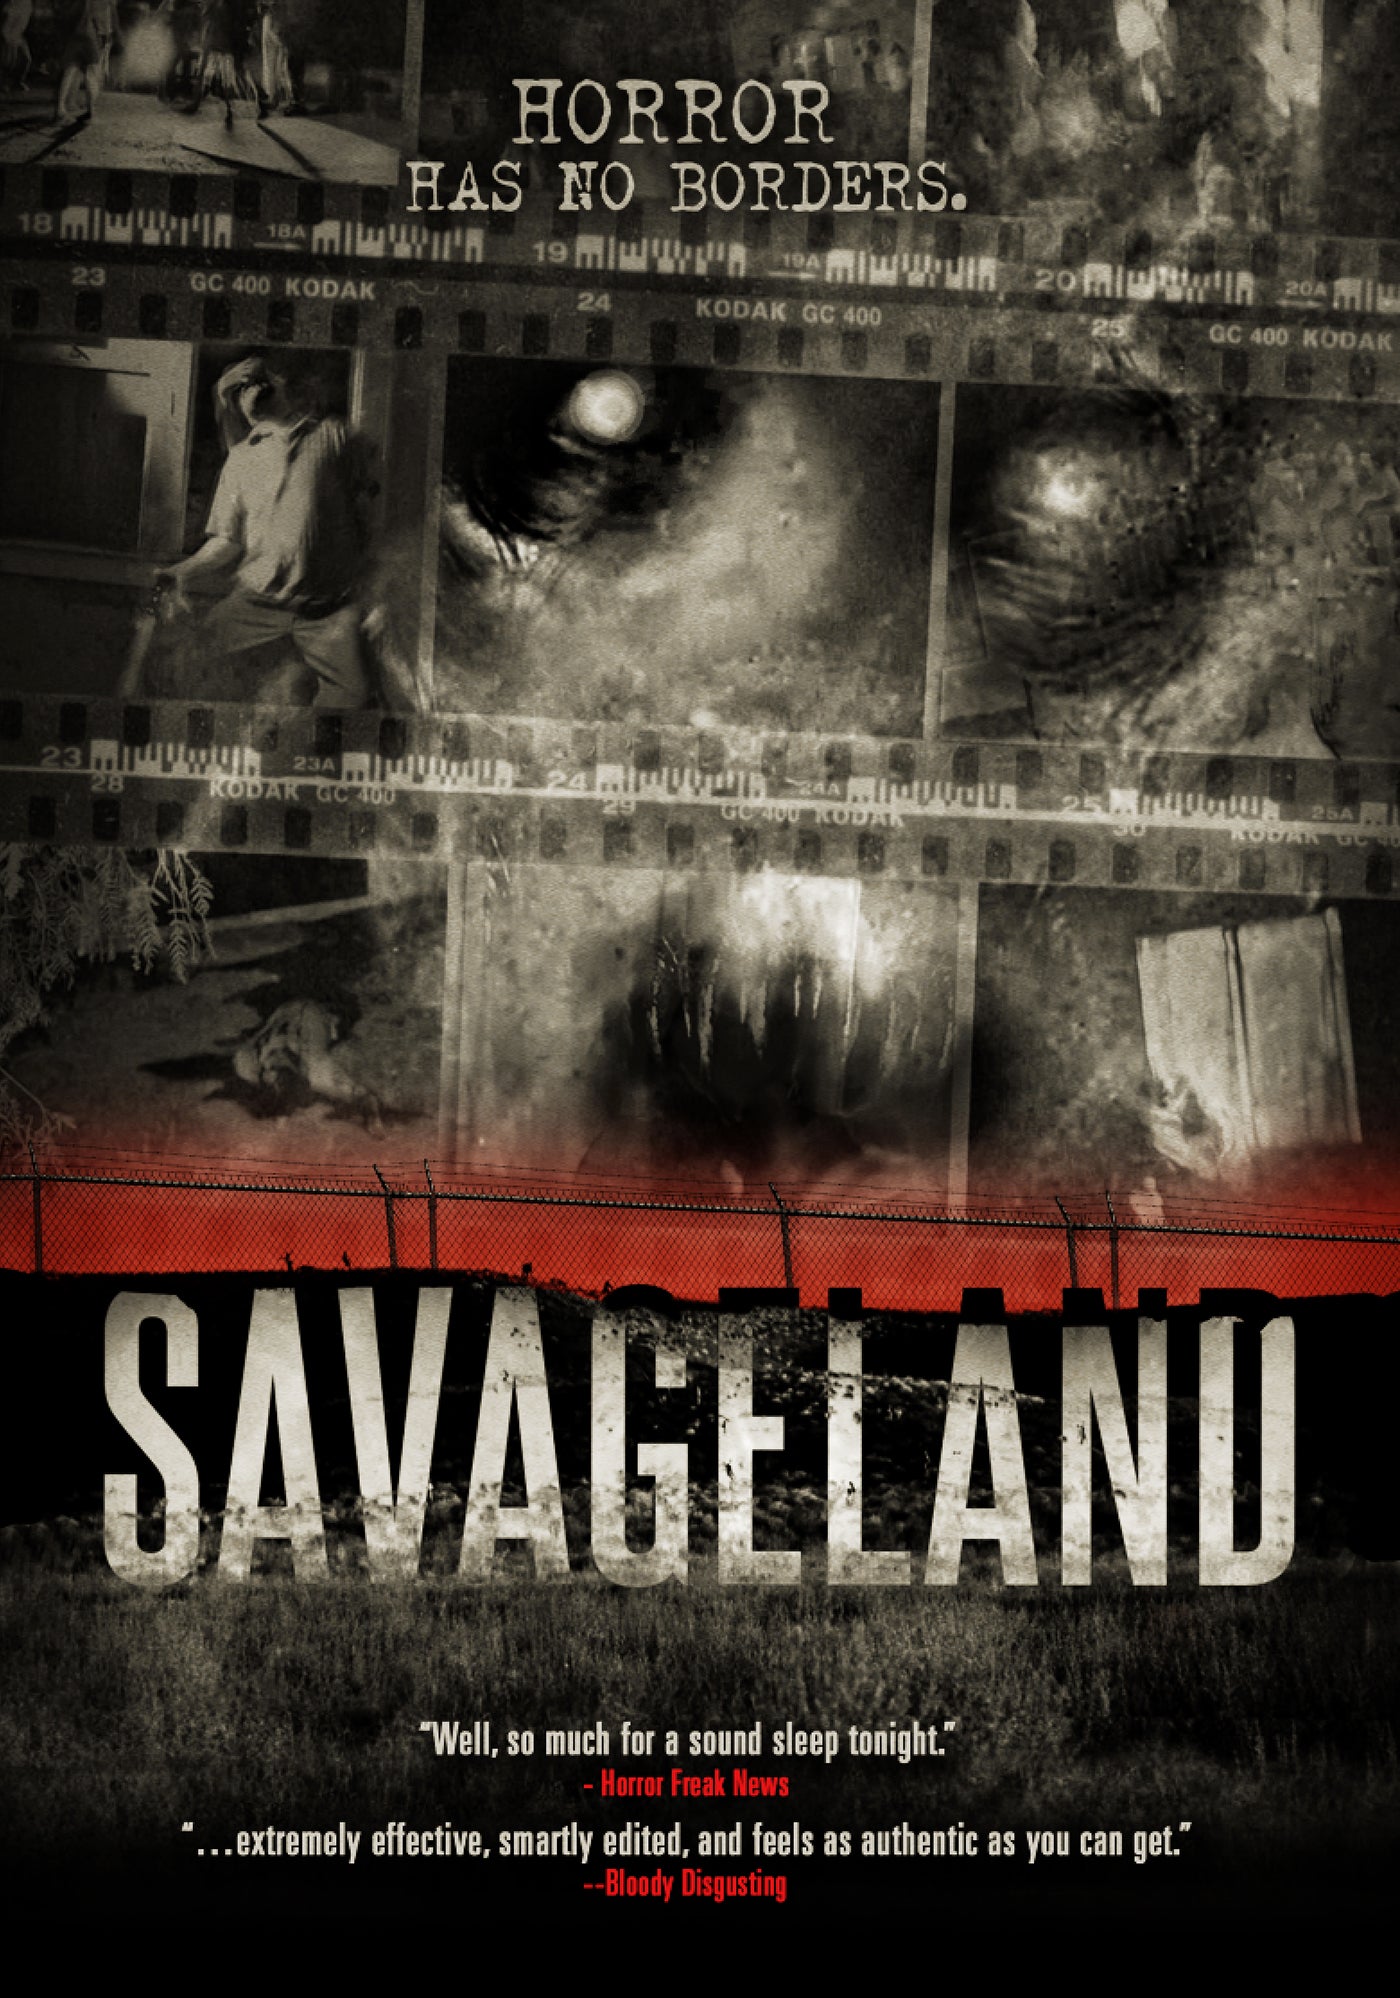 SAVAGELAND DVD